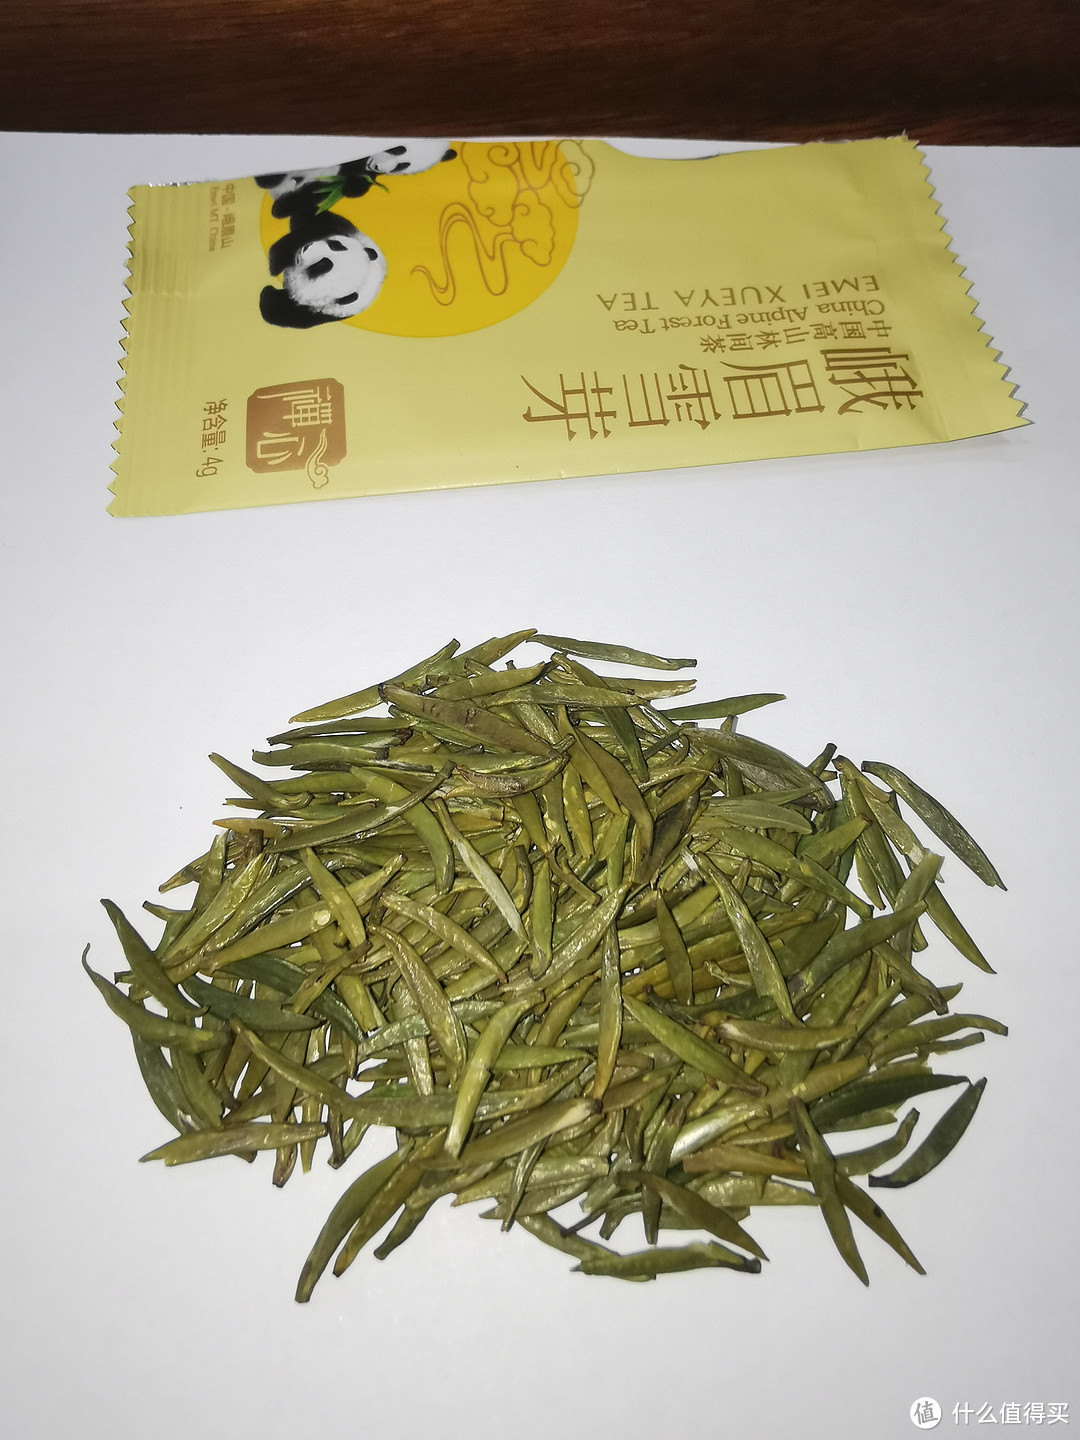 这张图可以看出竹叶青类茶的特点，基本是不保留茶毫的，而且有抛光的工艺在里面。对比四川其他区域的这类扁茶（雀舌、石花等，反正叫法很多），竹叶青更偏黄一些。